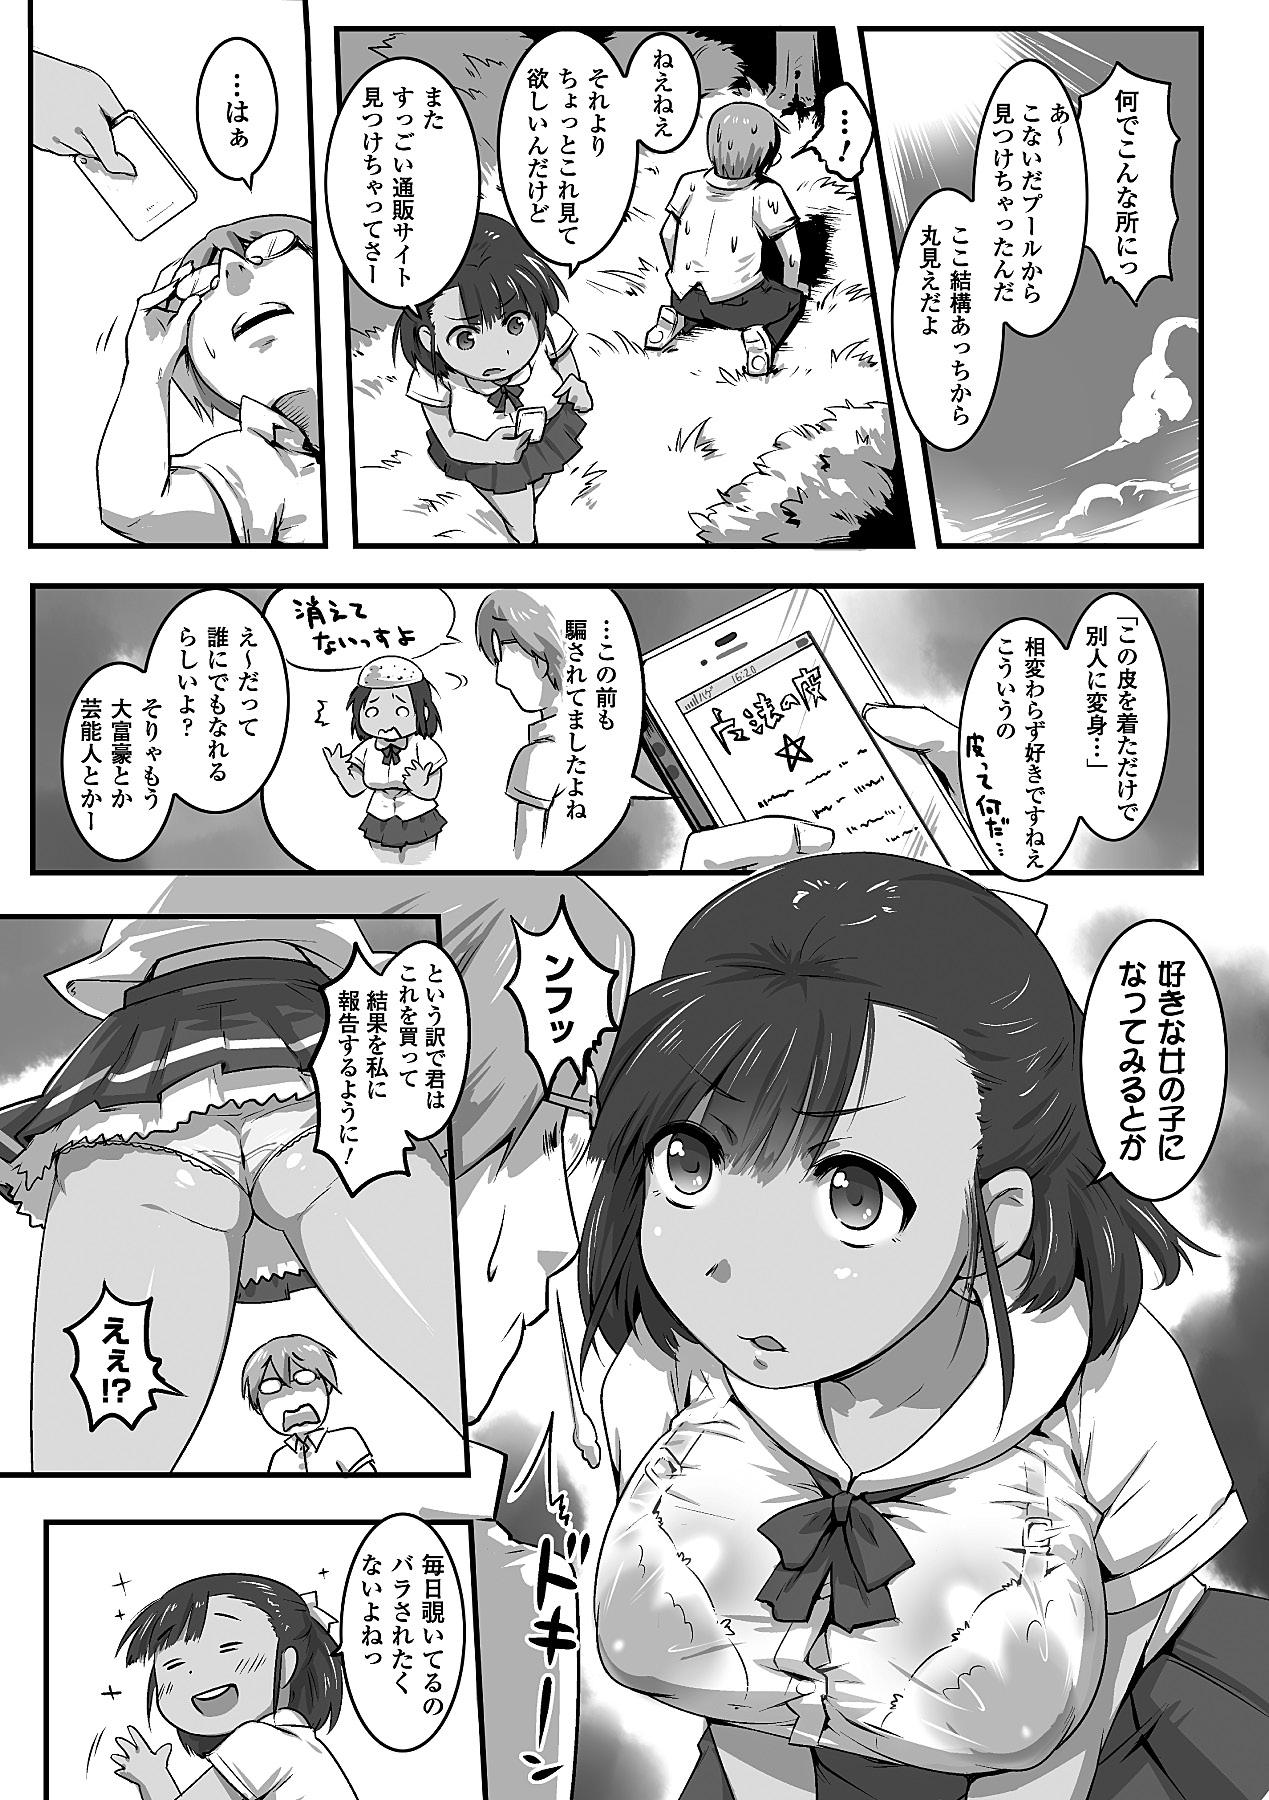 Footjob Bessatsu Comic Unreal Kawa o Kite Ano Musume ni Narisumashi H Vol. 2 Full - Page 14